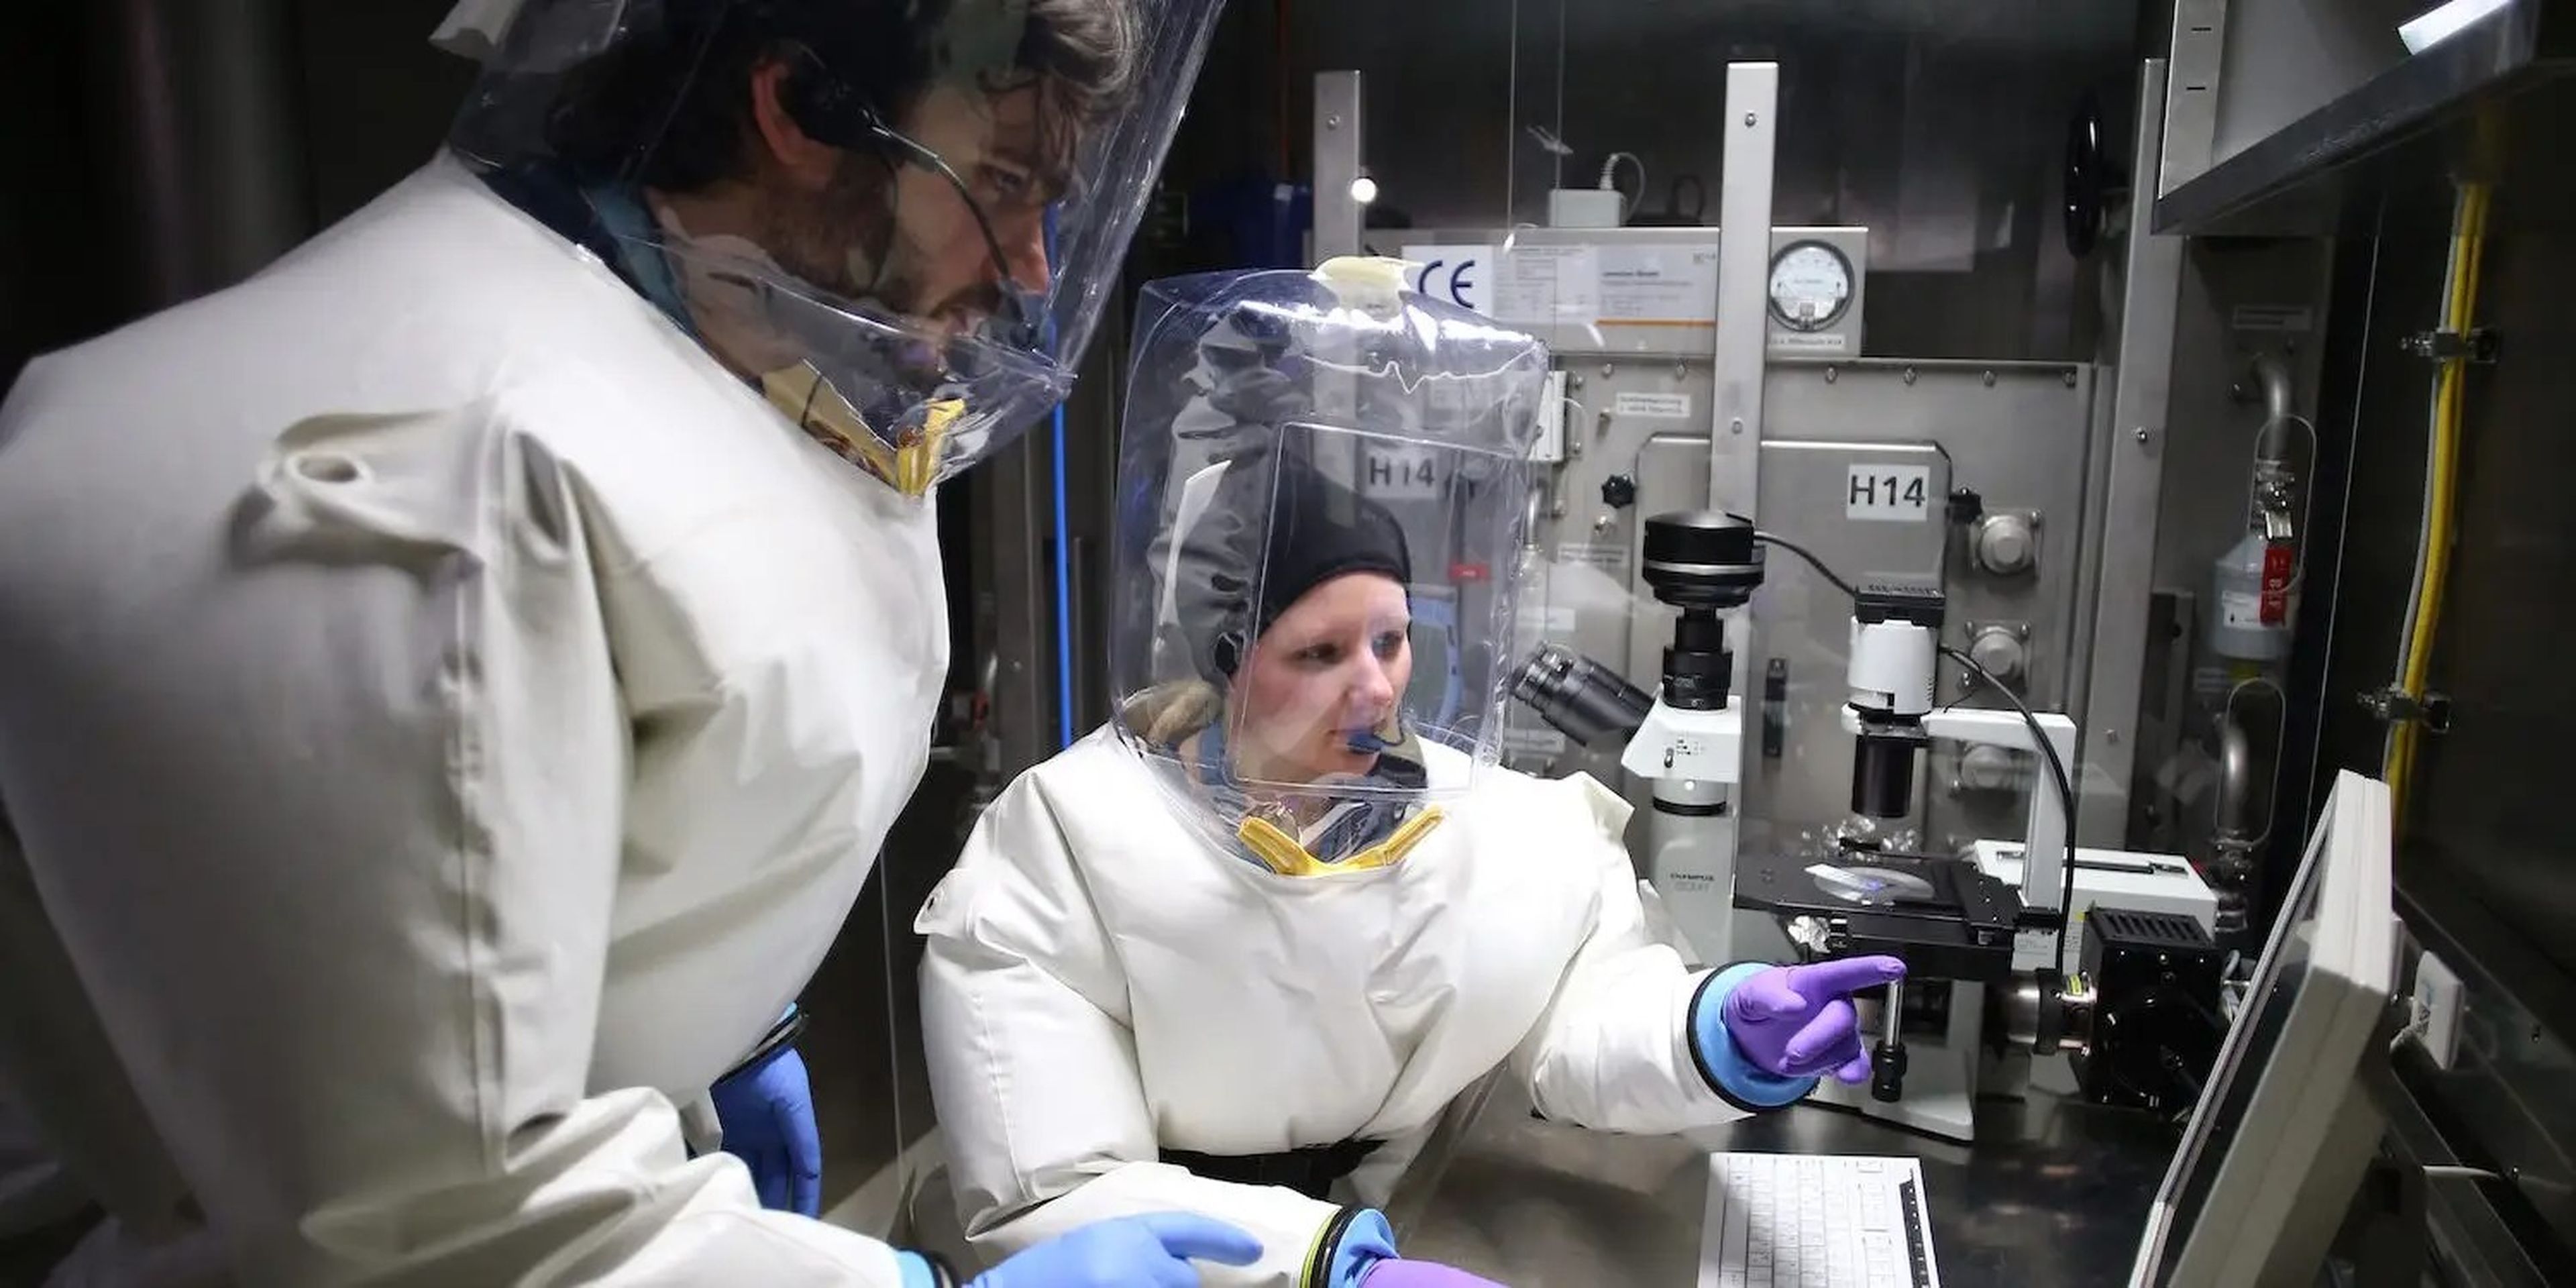 Los virólogos Lisa Oestereich y Toni Rieger trabajan en el nuevo laboratorio de Nivel 4 de Seguridad Biológica del Instituto Bernhard Nocht de Medicina Tropical (BNI) en Hamburgo, Alemania, el 25 de enero de 2013.